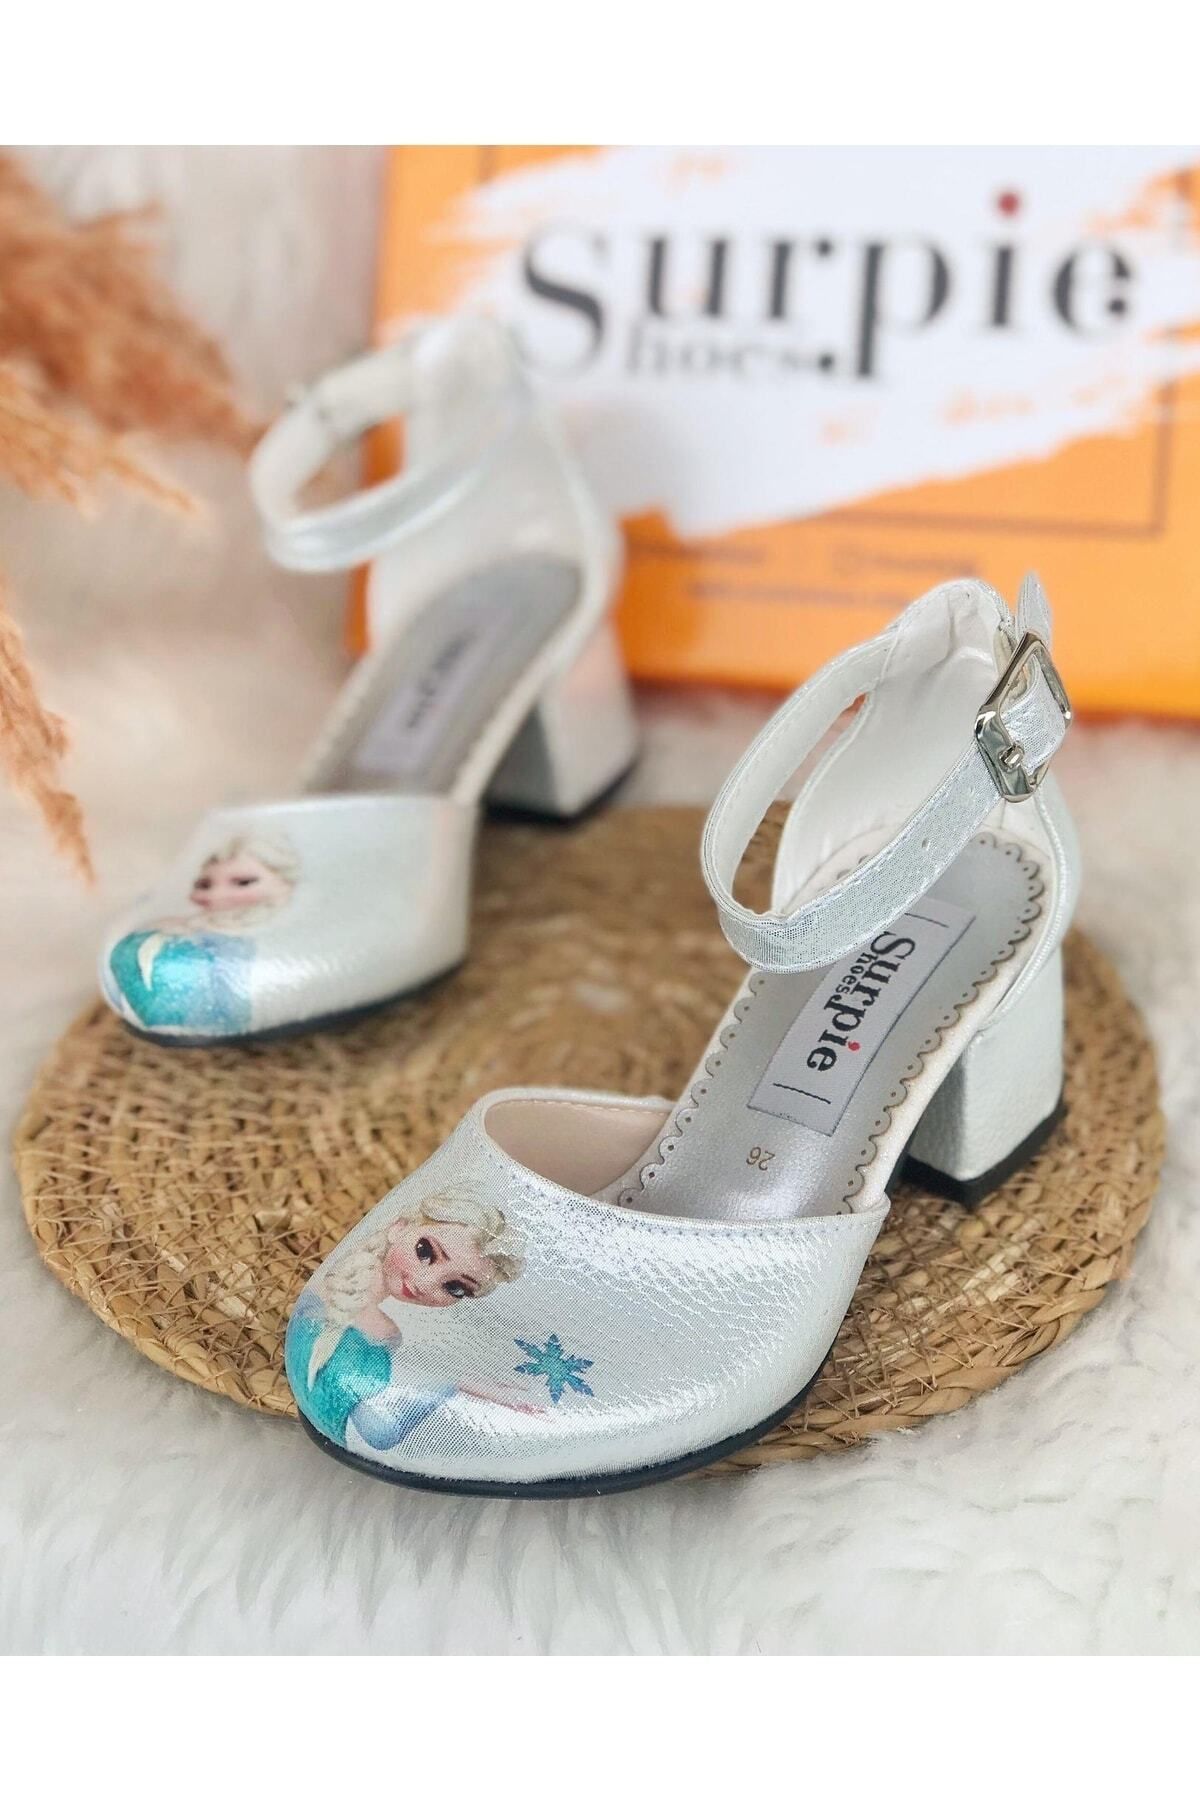 Surpie Shoes Elsa Desenlı Şeffaf Topuklu Ayakkabı, Çocuk Topuklu Ayakkabı